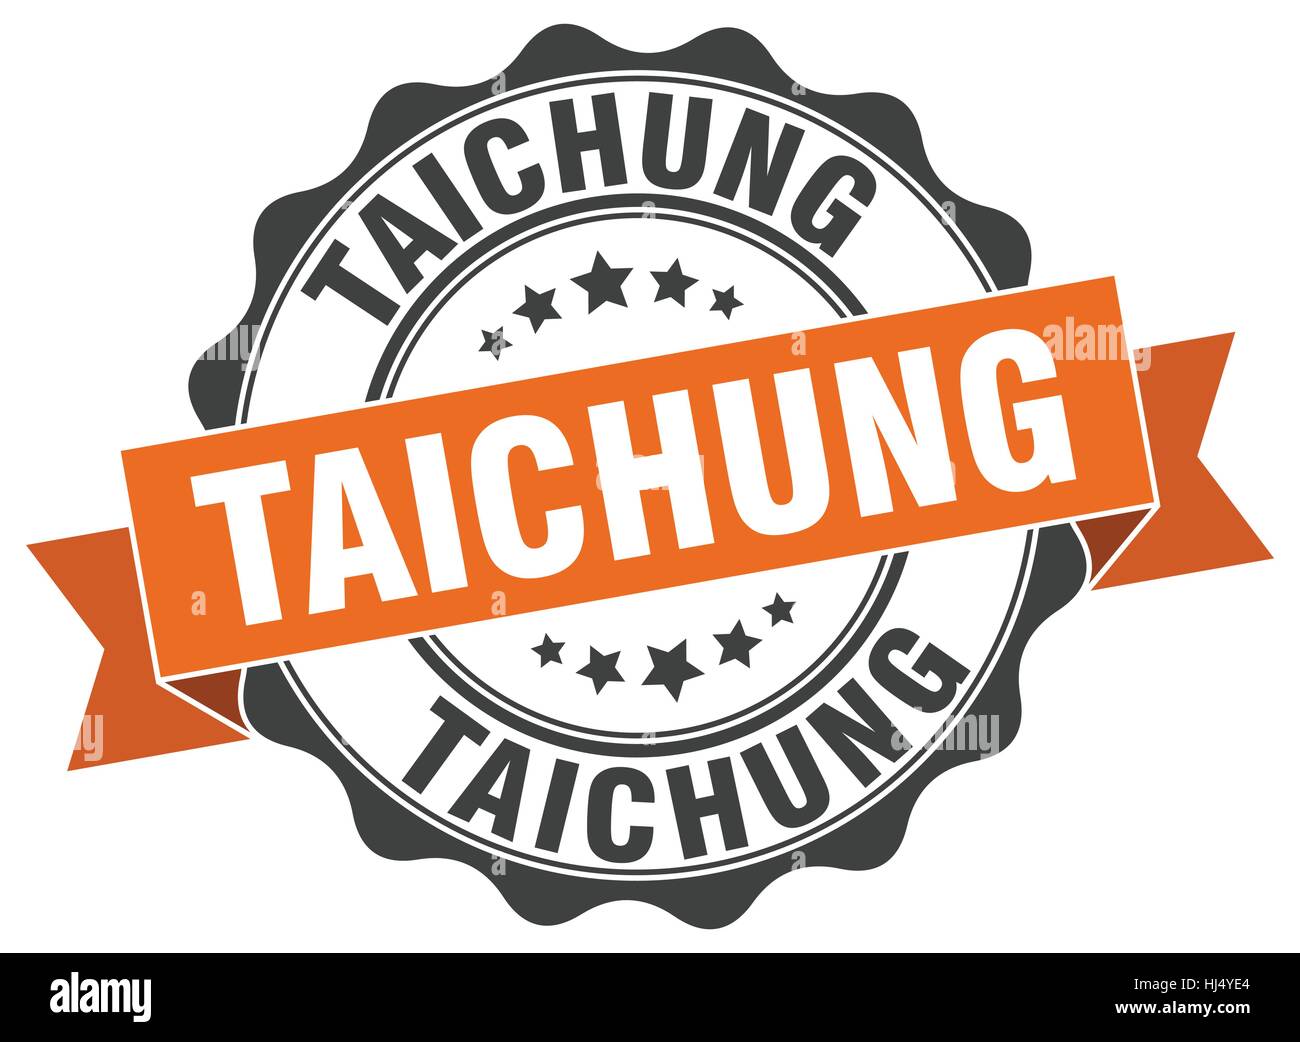 Taichung round ribbon seal Stock Vector